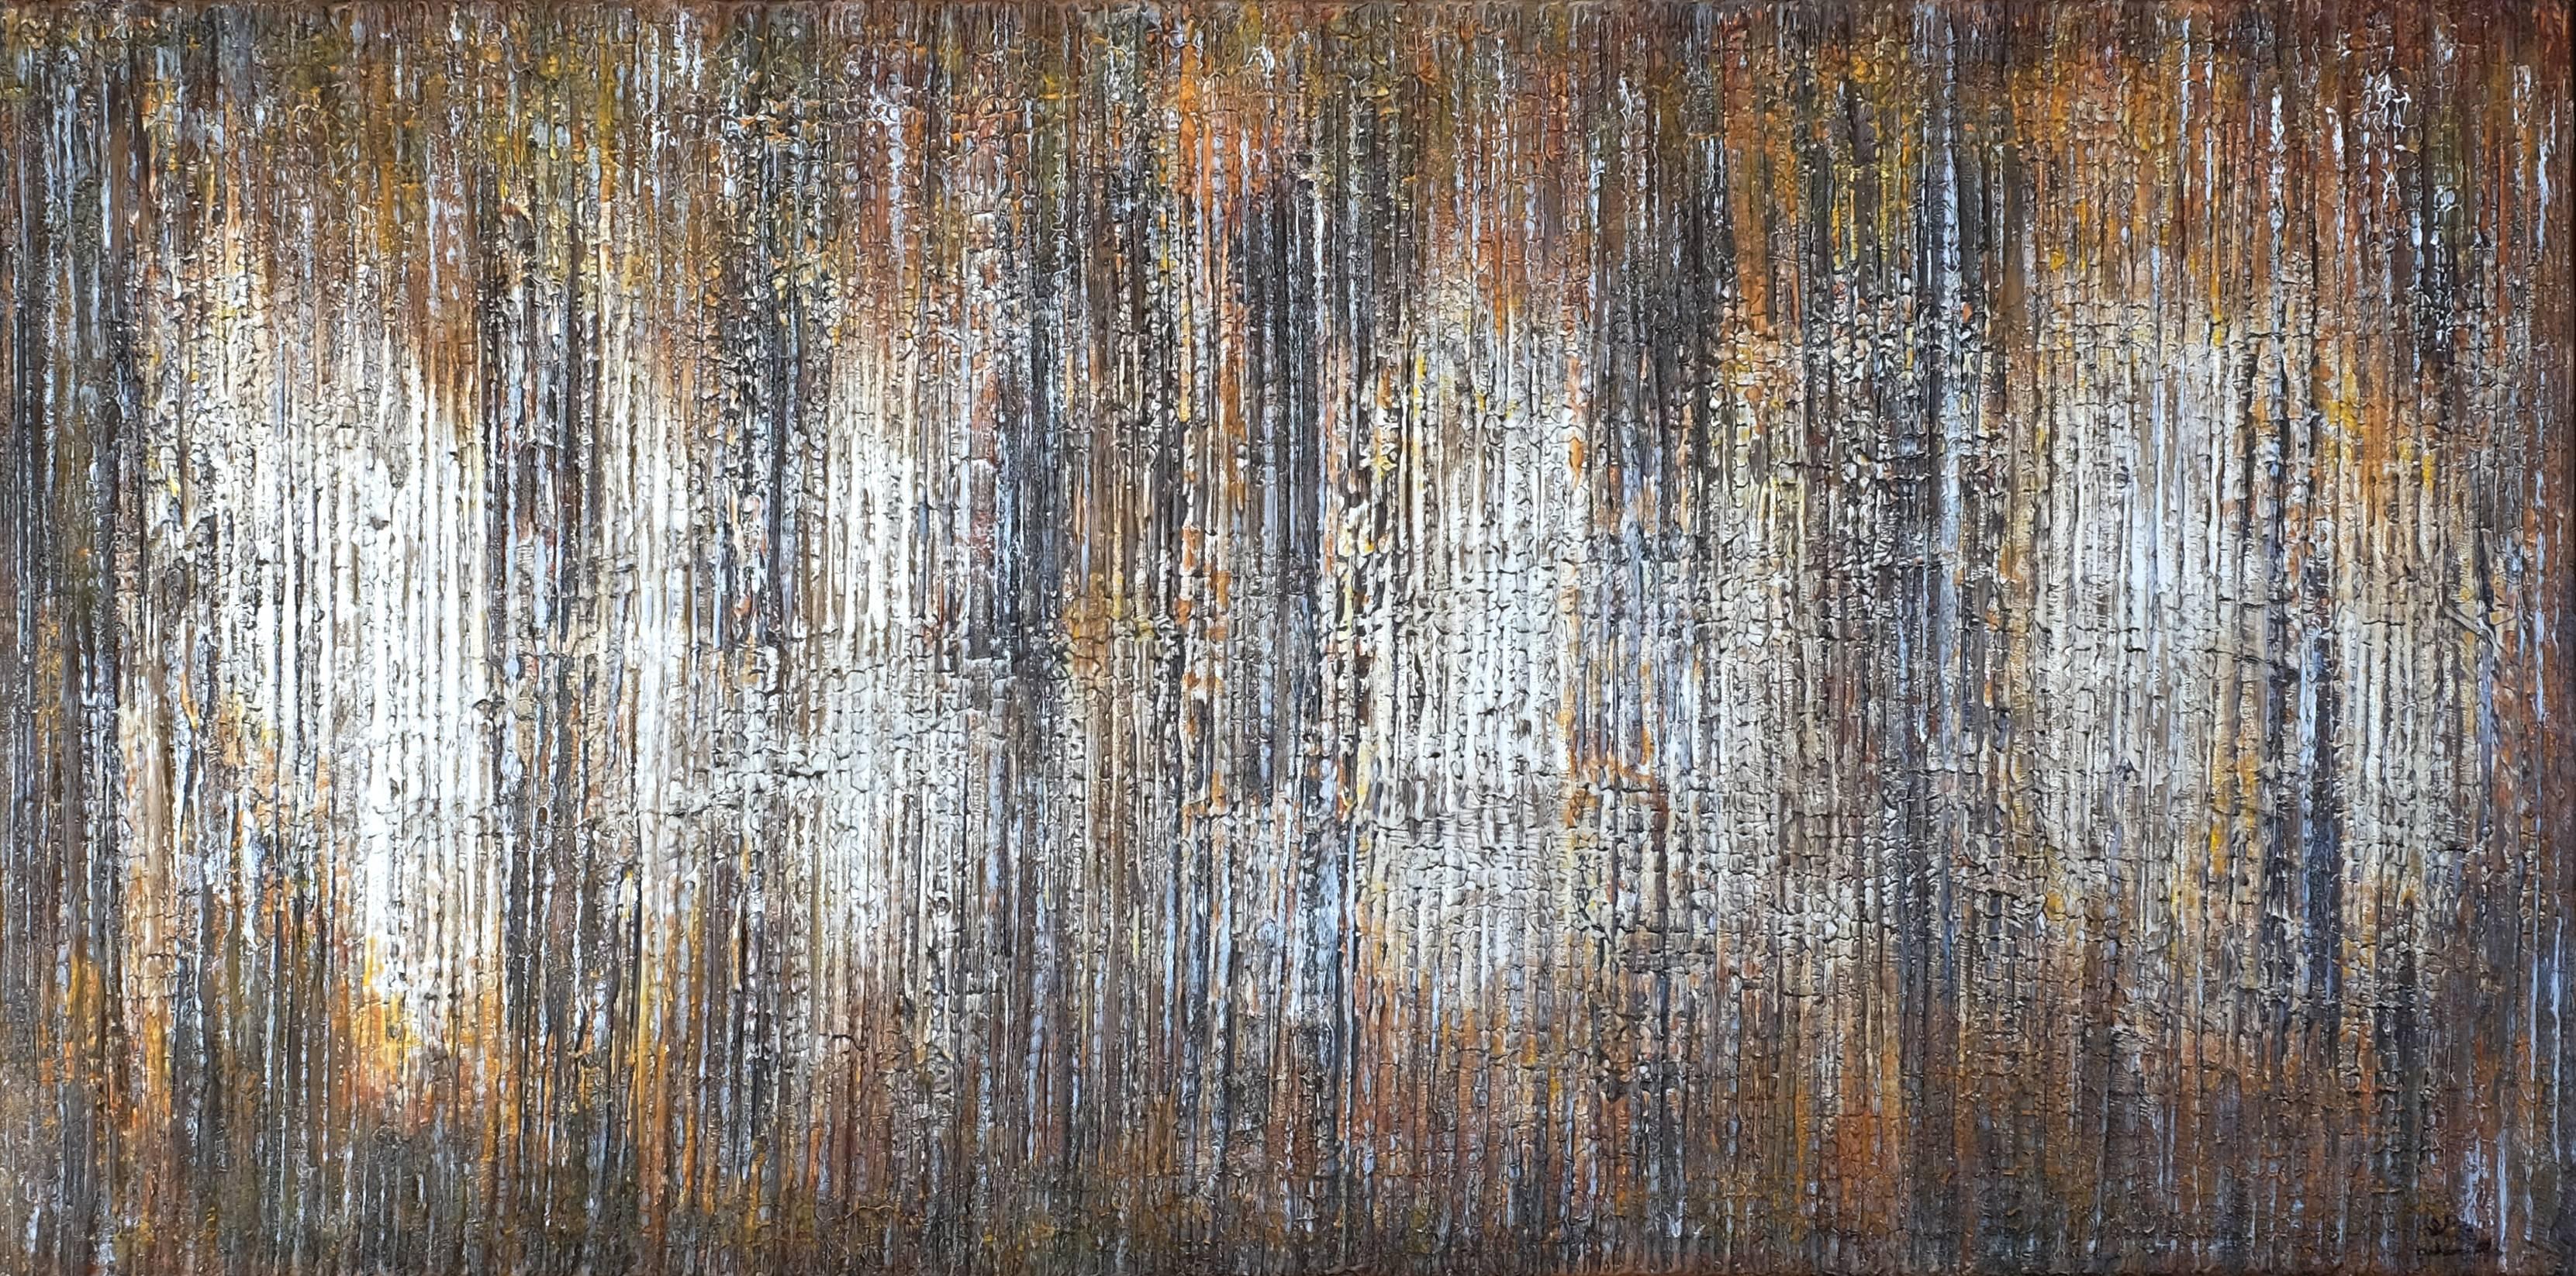  Hyun Ae Kang Abstract Painting - Rain